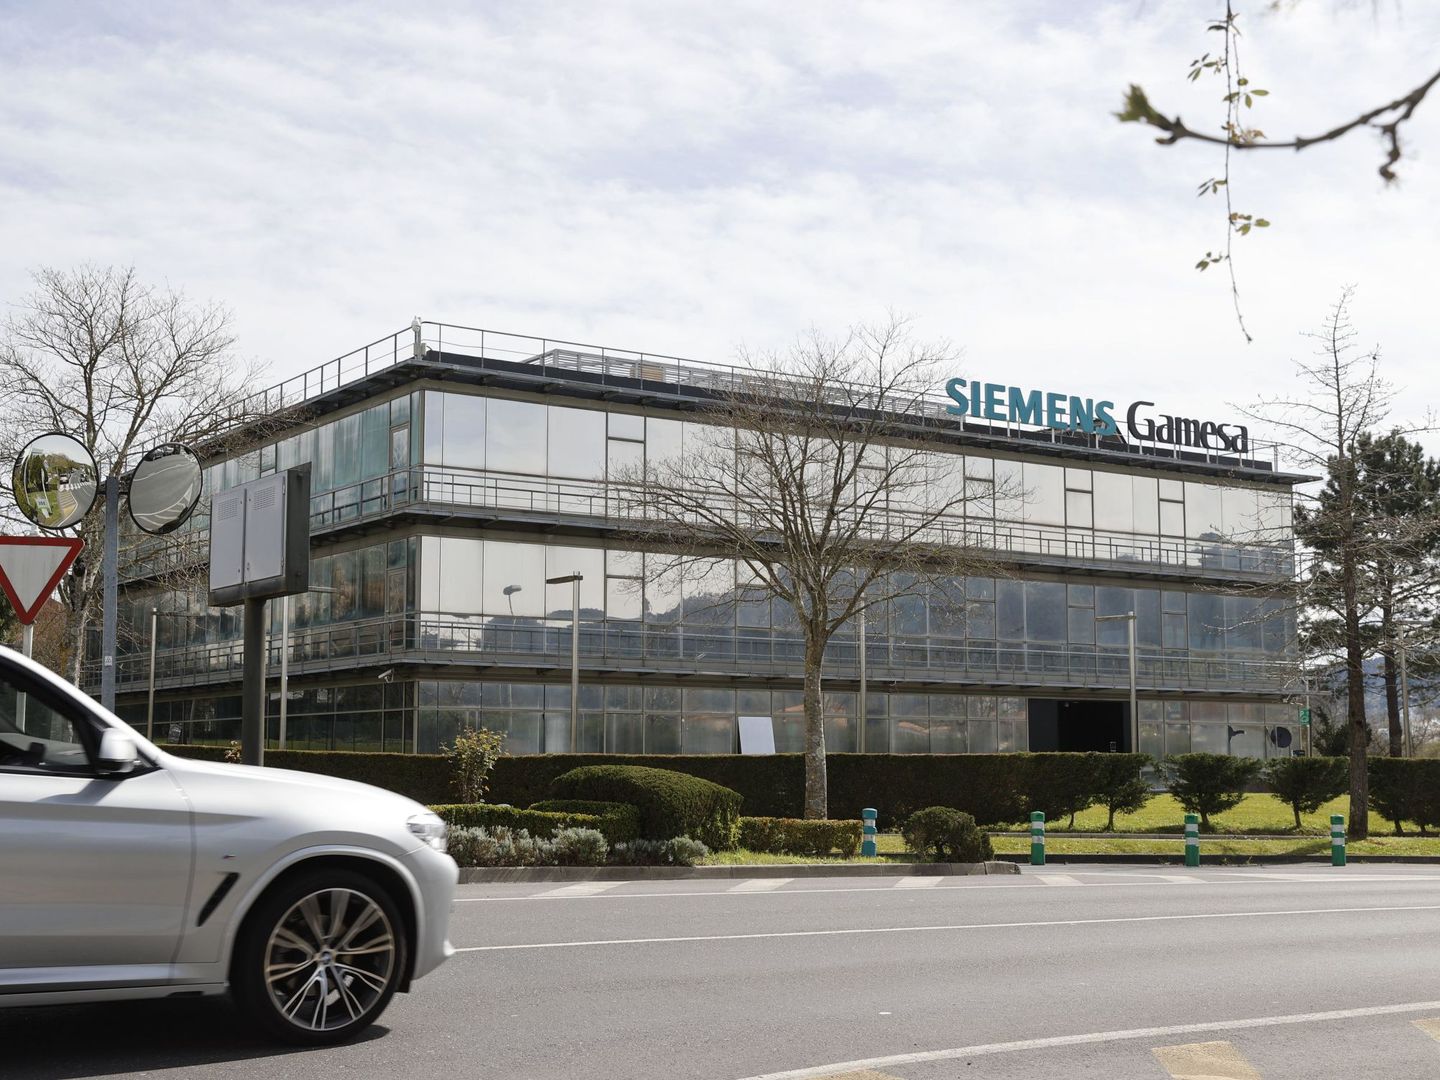 Vista de la sede de la compañía Siemens Gamesa en el parque tecnológico de Zamudio, en Vizcaya. (EFE)